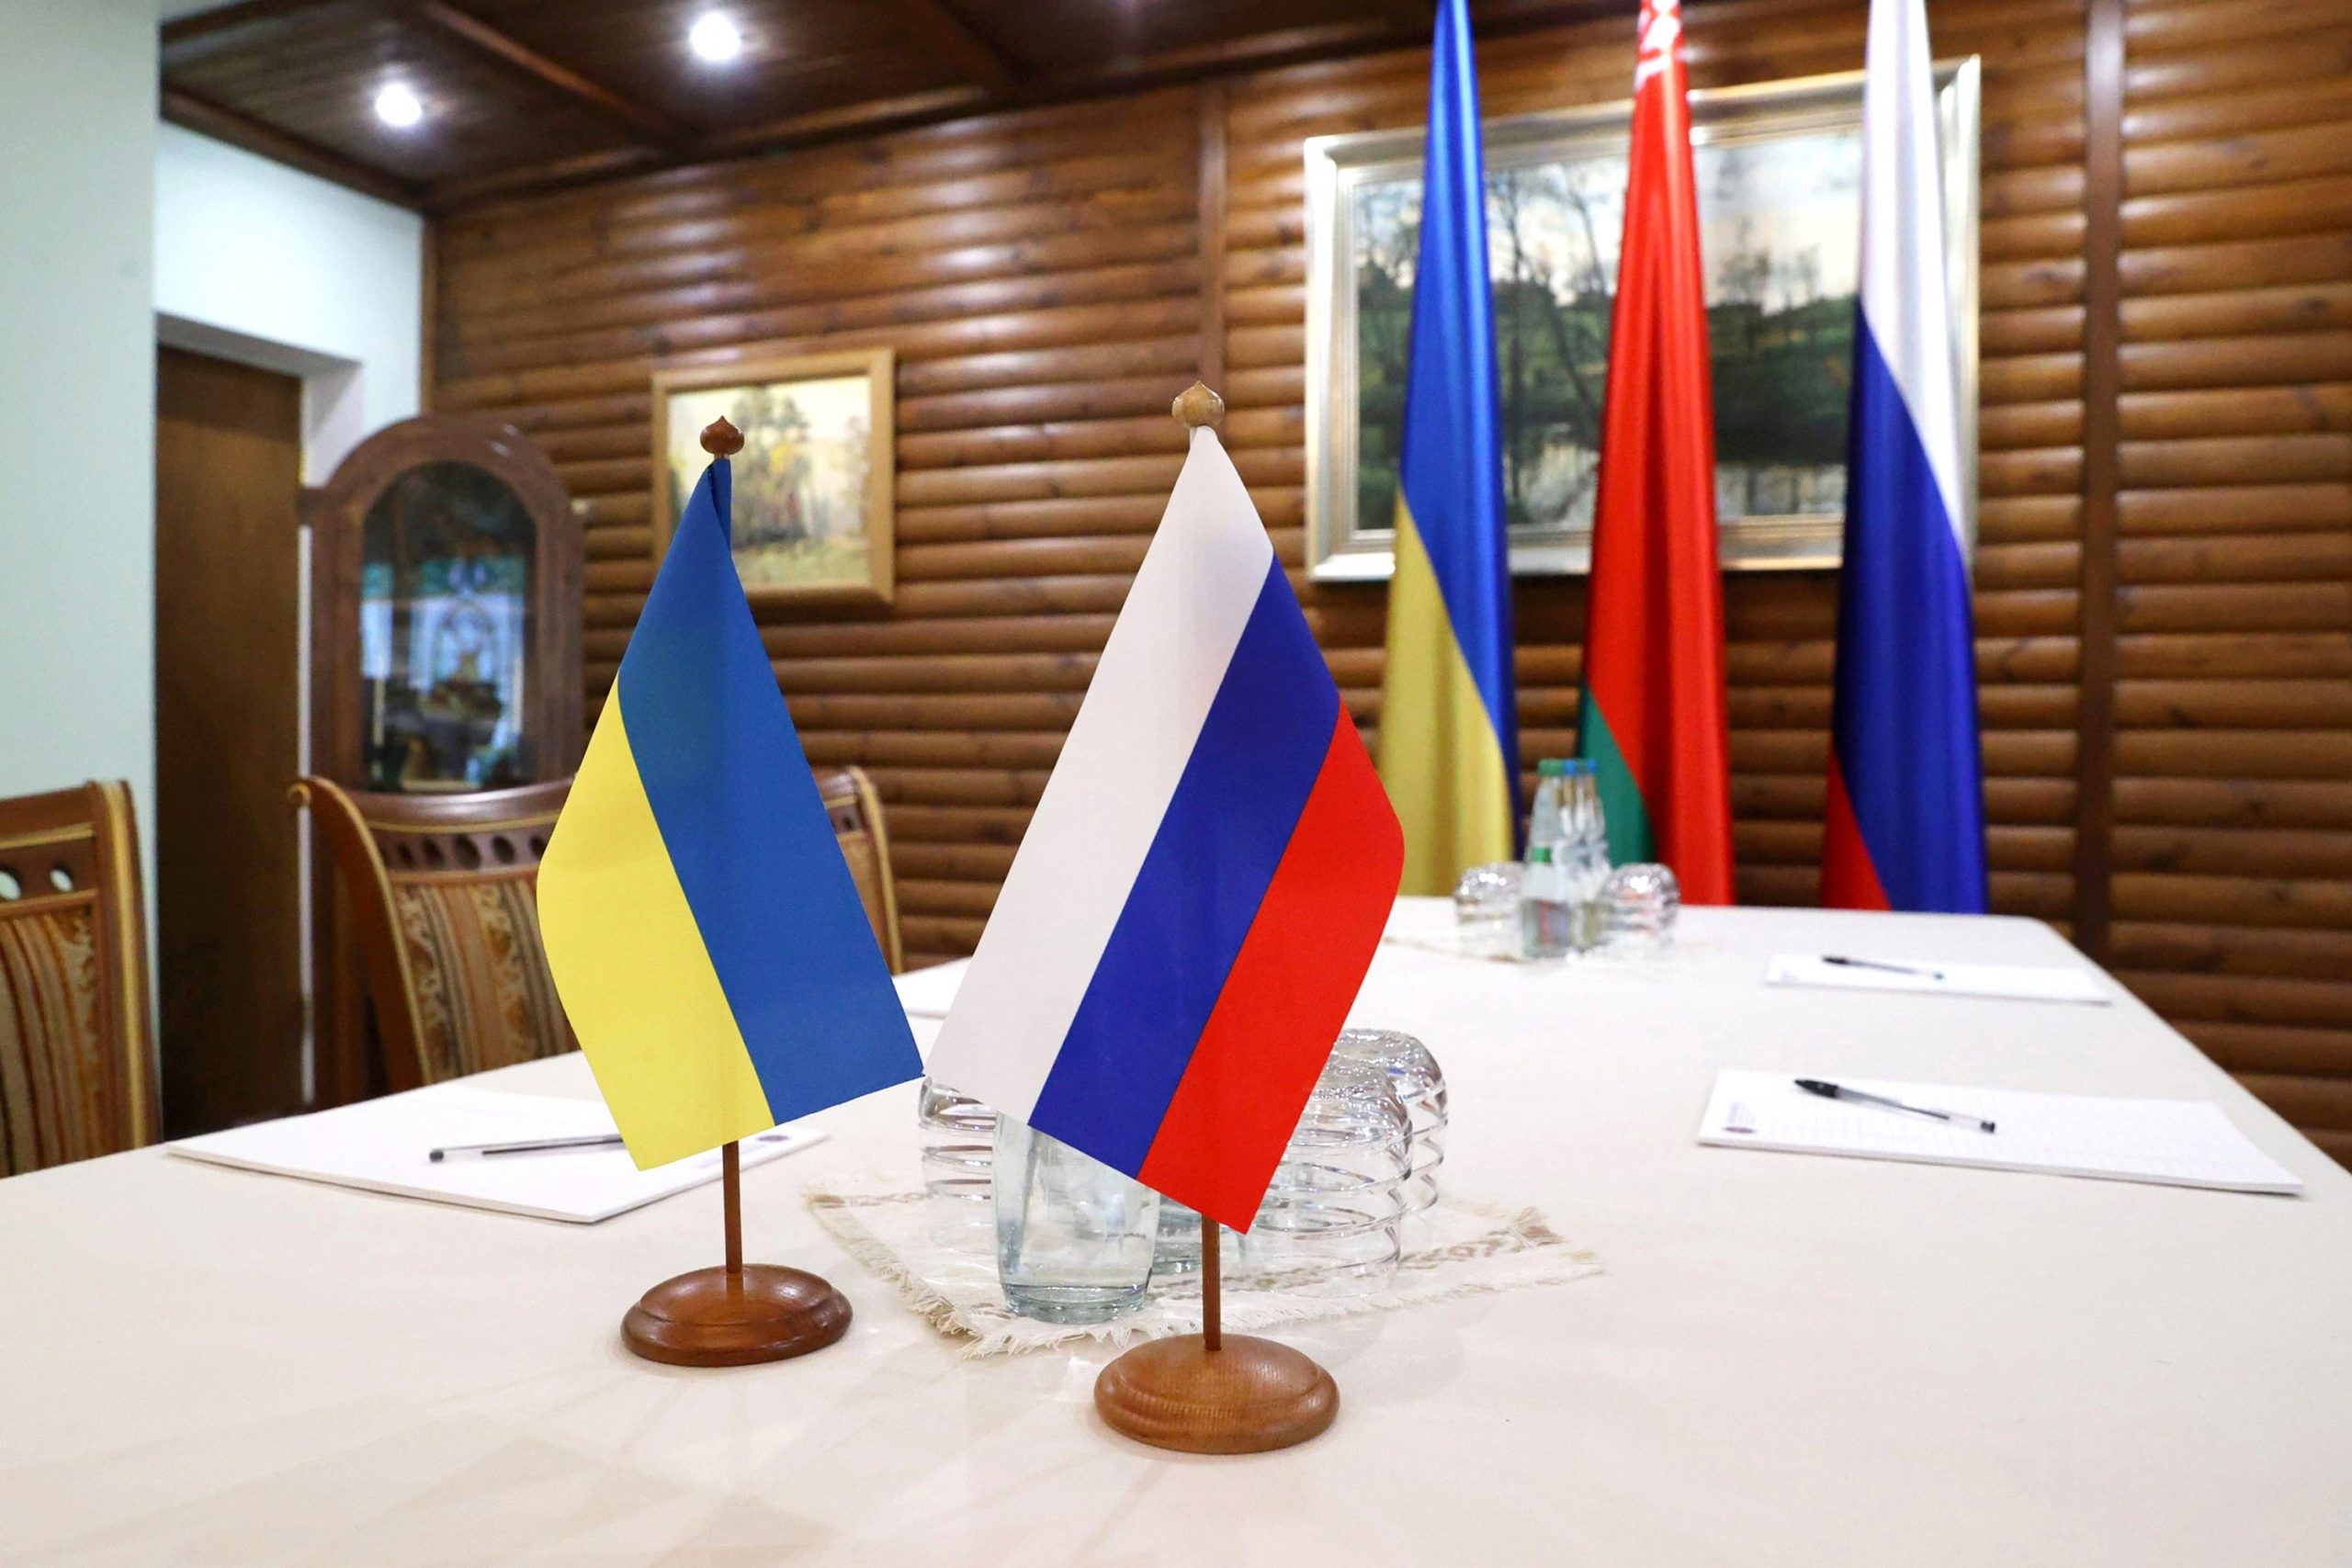 Rusia kundërshton tërheqjen e trupave nga Ukraina si kusht për bisedime